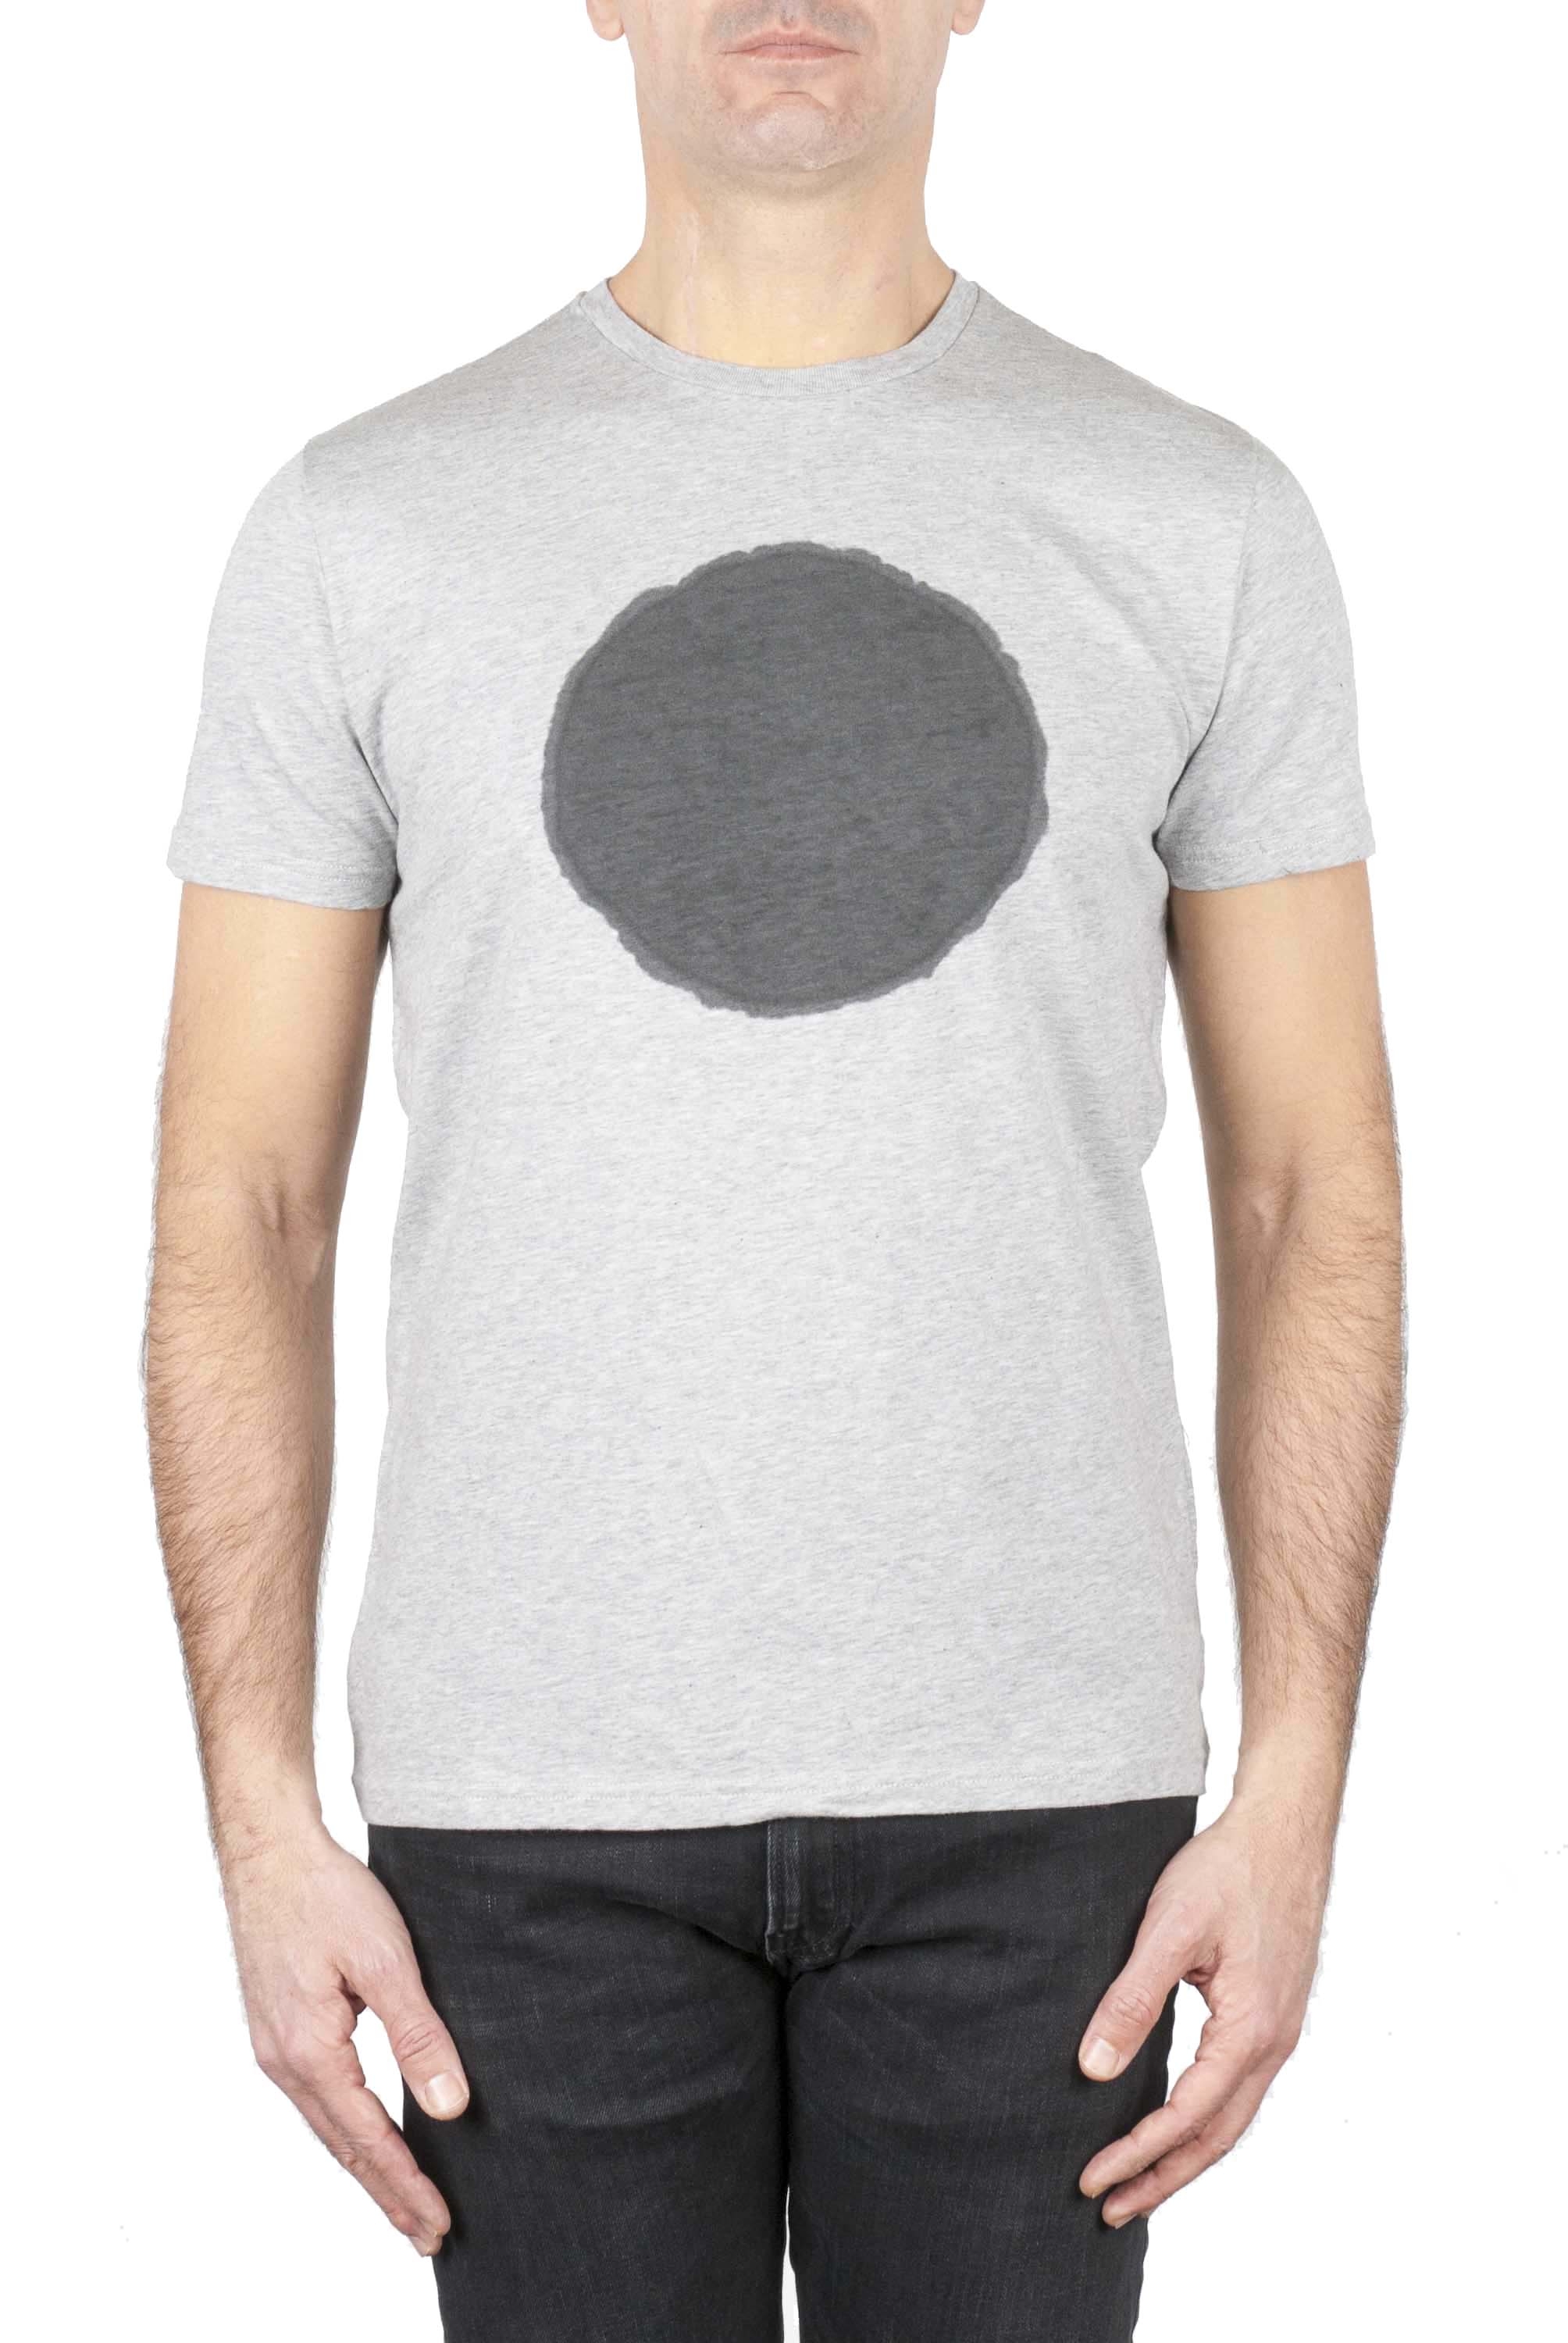 SBU 01169 T-shirt girocollo classica a maniche corte in cotone grafica stampata nera e grigia 01